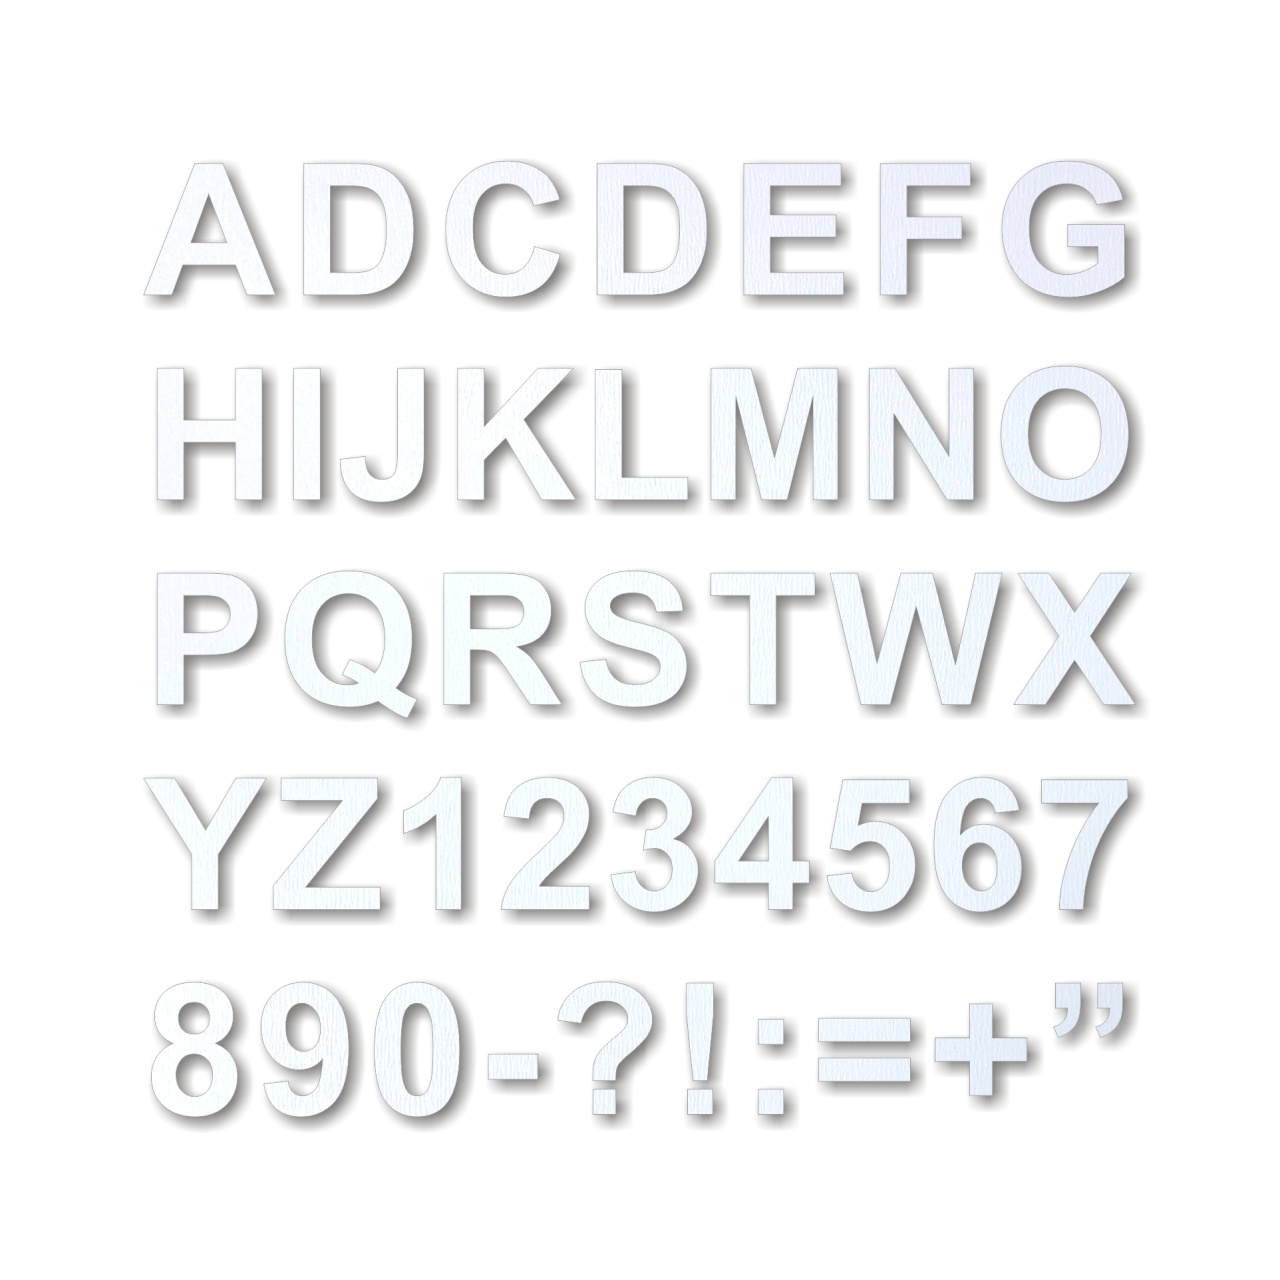 Literă sau cifră clasică din alfabet, 2 cm înălțime, placaj lemn, 1 buc :: 2 cm